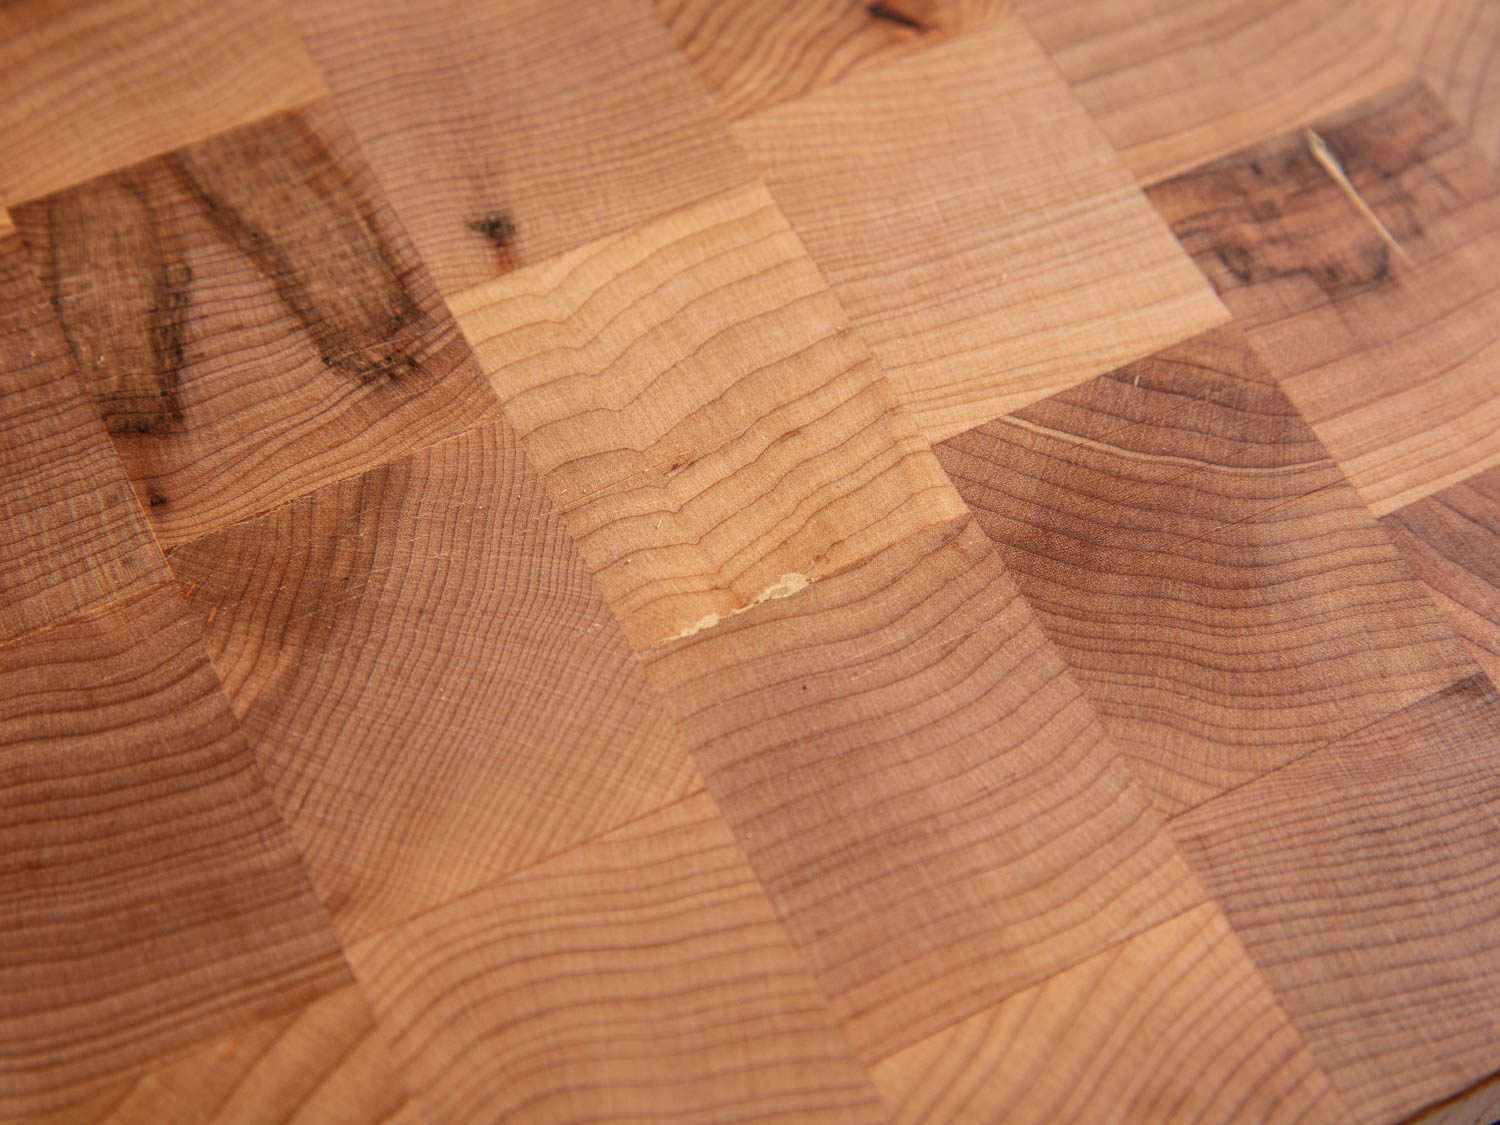 特写的约翰布斯端纹枫砧板，显示在木材的小缺陷